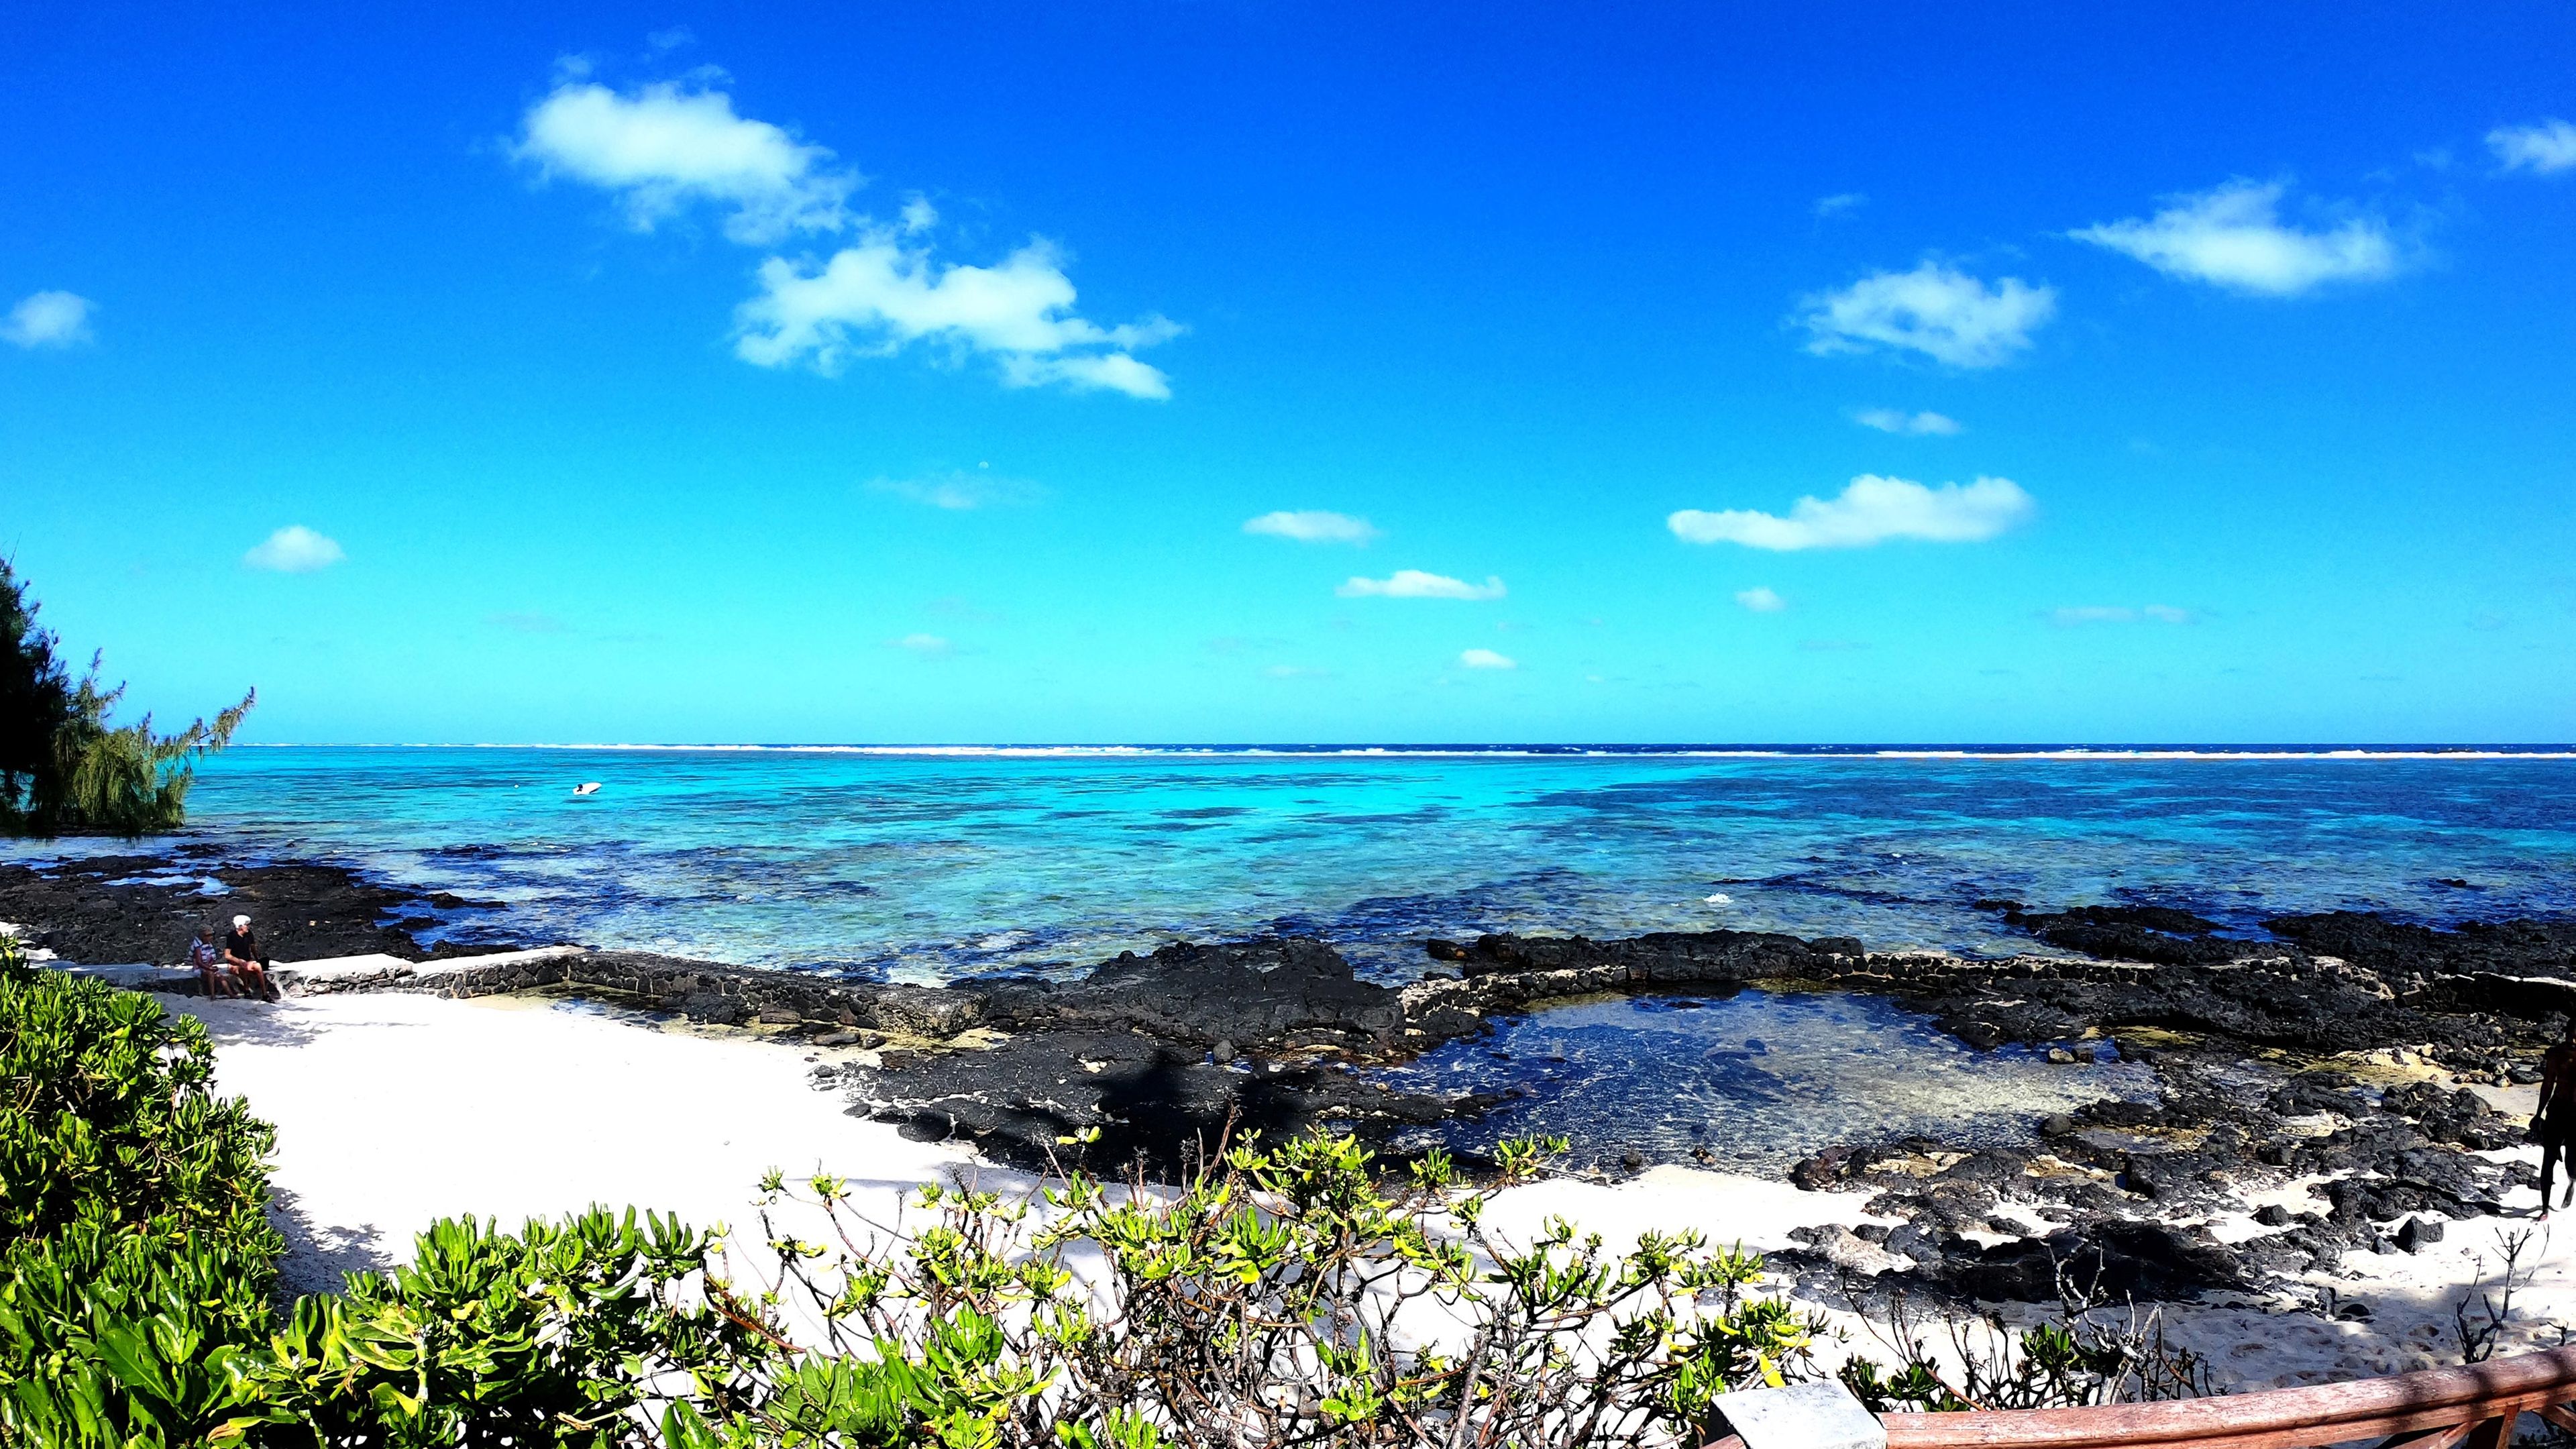 Bright blue sky above a beautiful beach in Mauritius